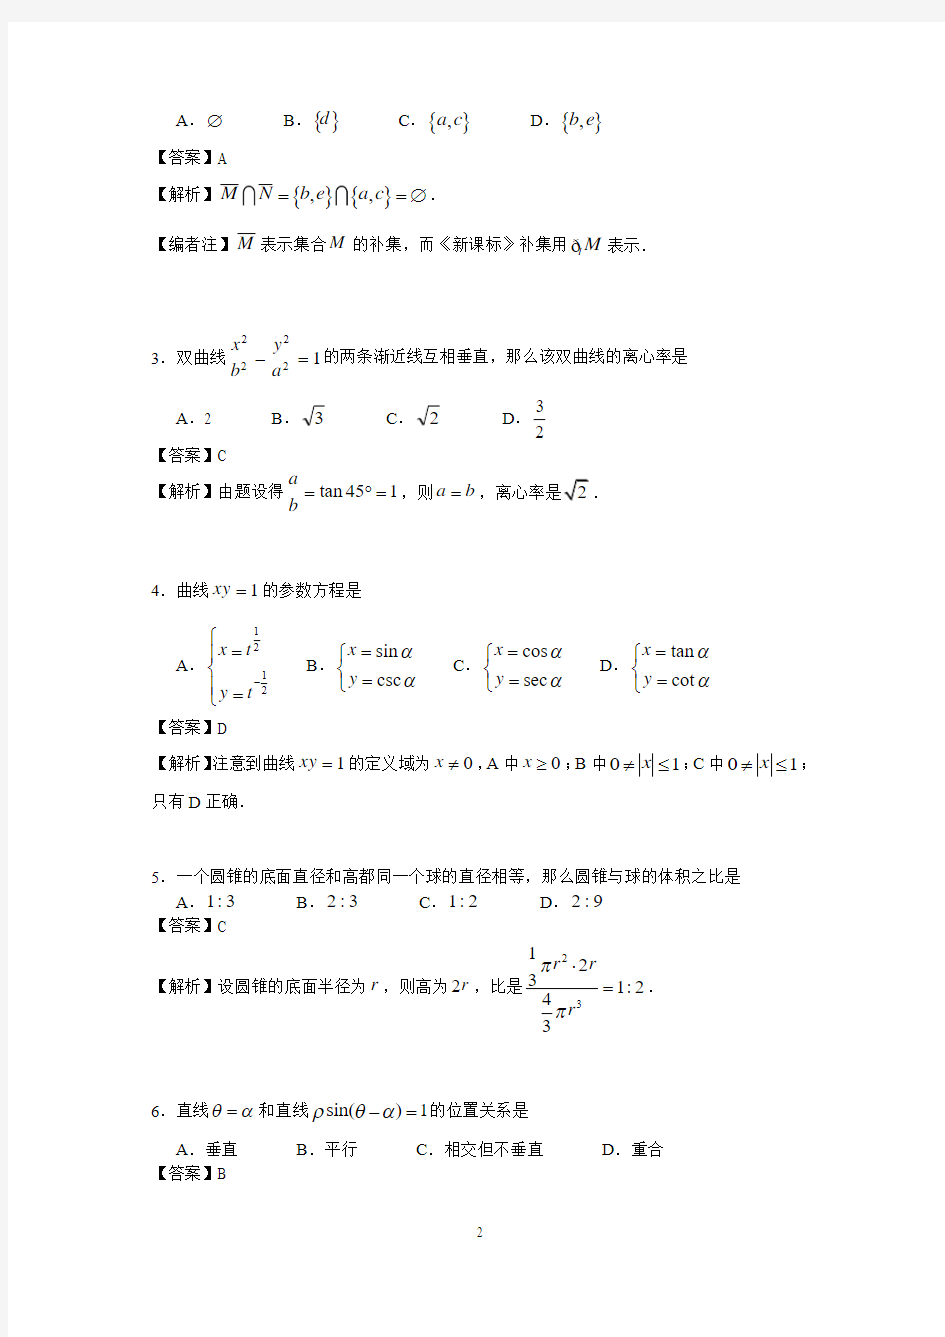 (详细解析)2000年春季高考试题——数学理科(北京、安徽卷)